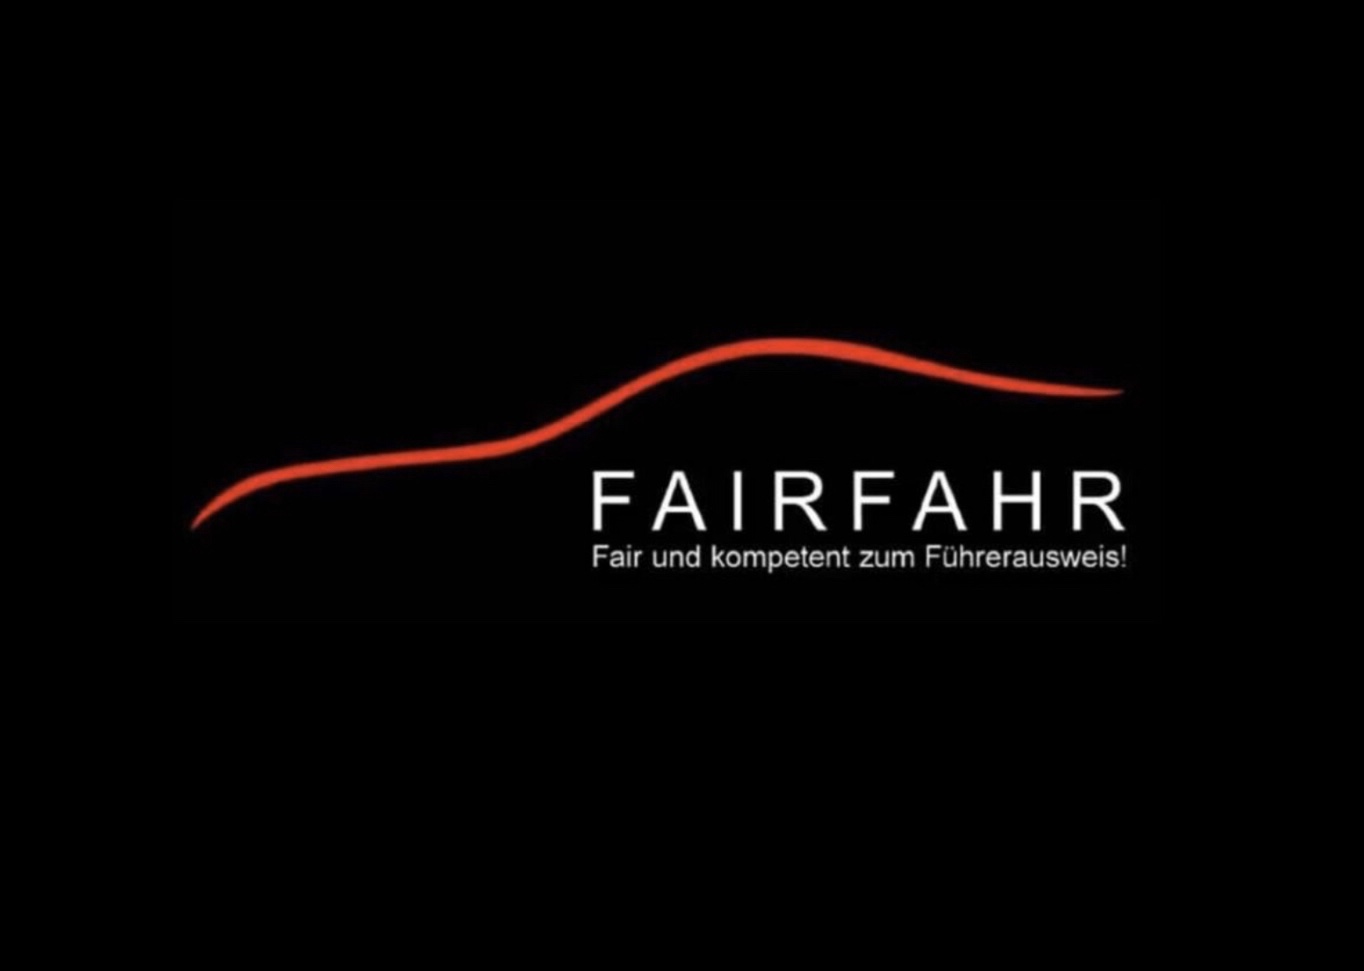 Images FAIRFAHR